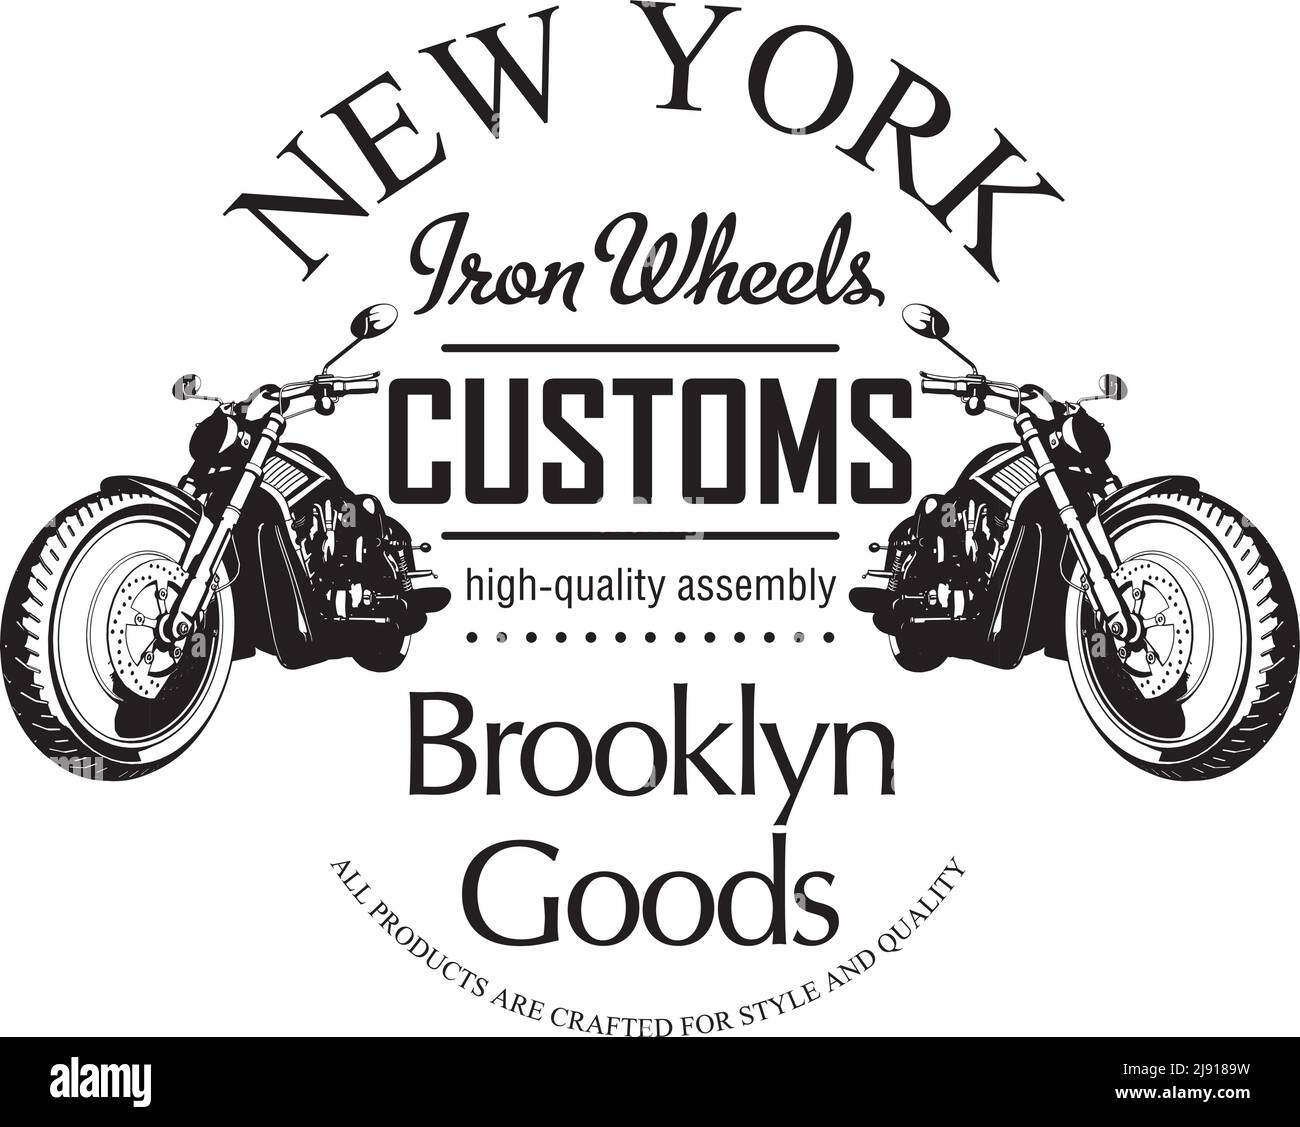 Wörter new york Ausgeschnittene Stockfotos und -bilder - Alamy